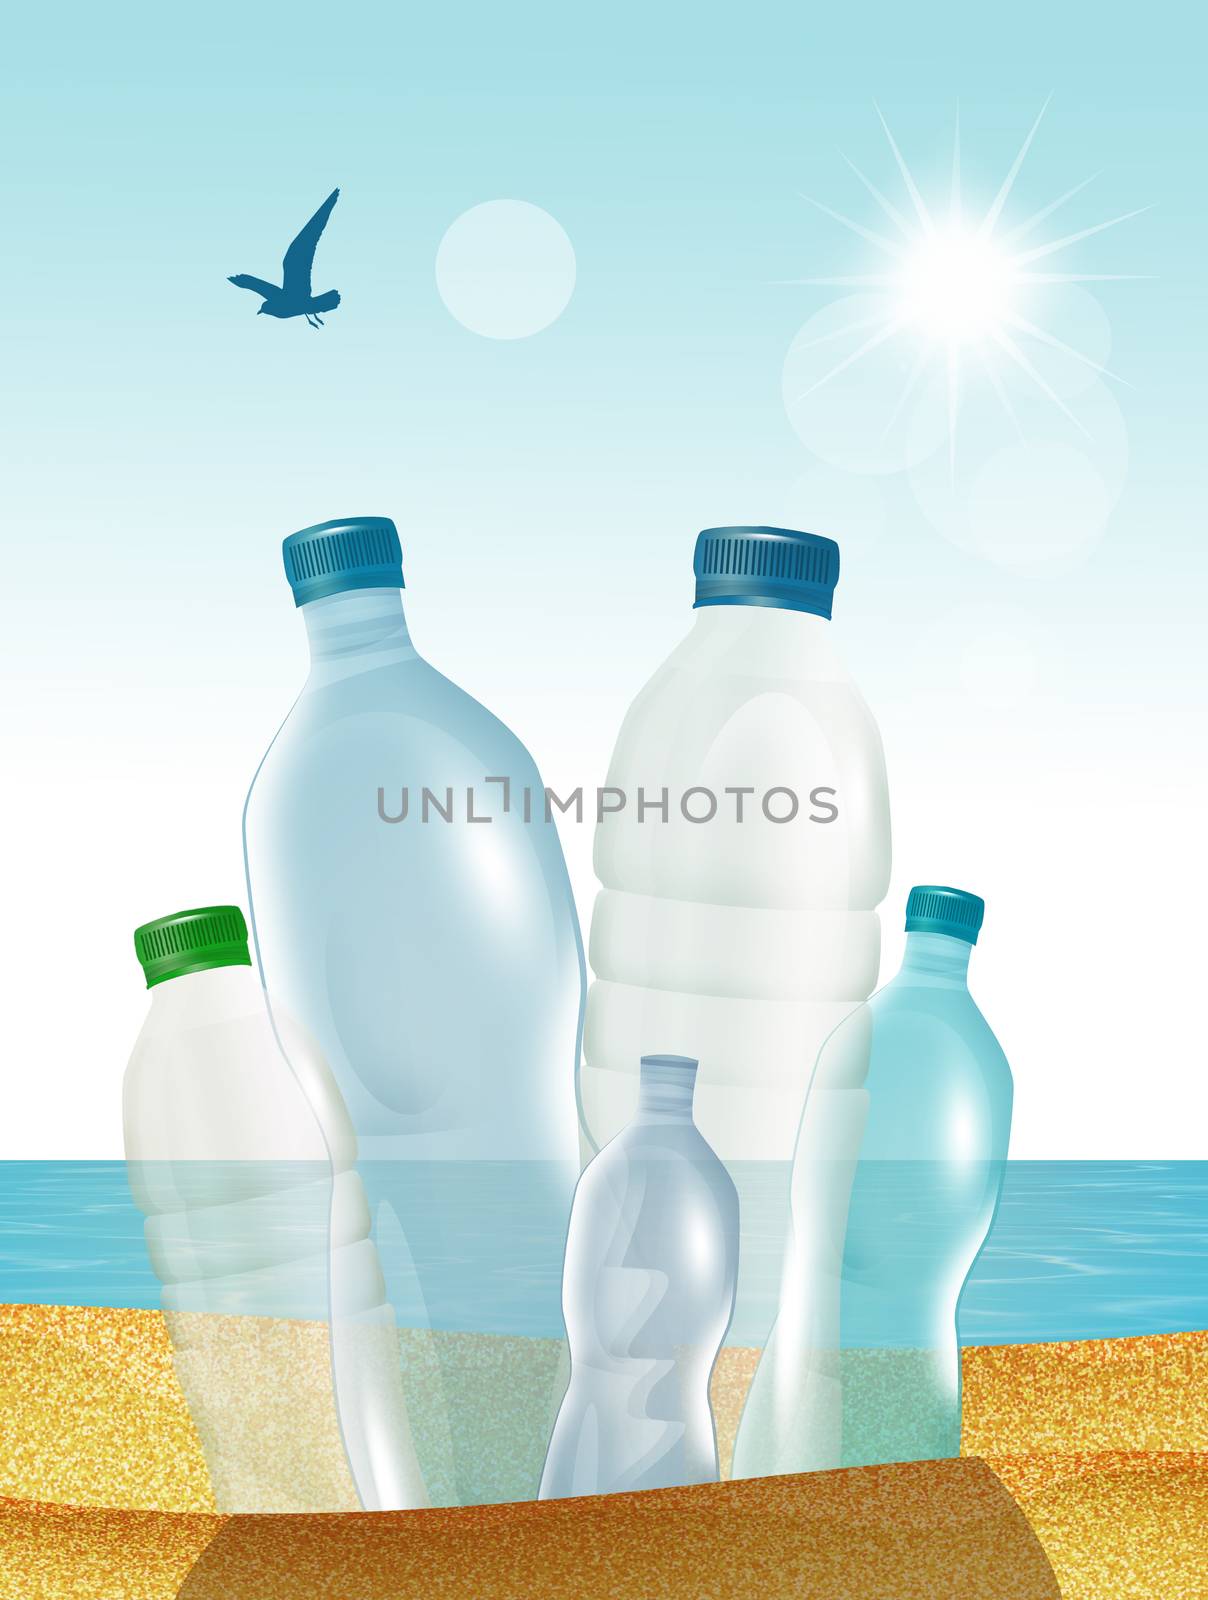 illustration of plastic bottles on the beach